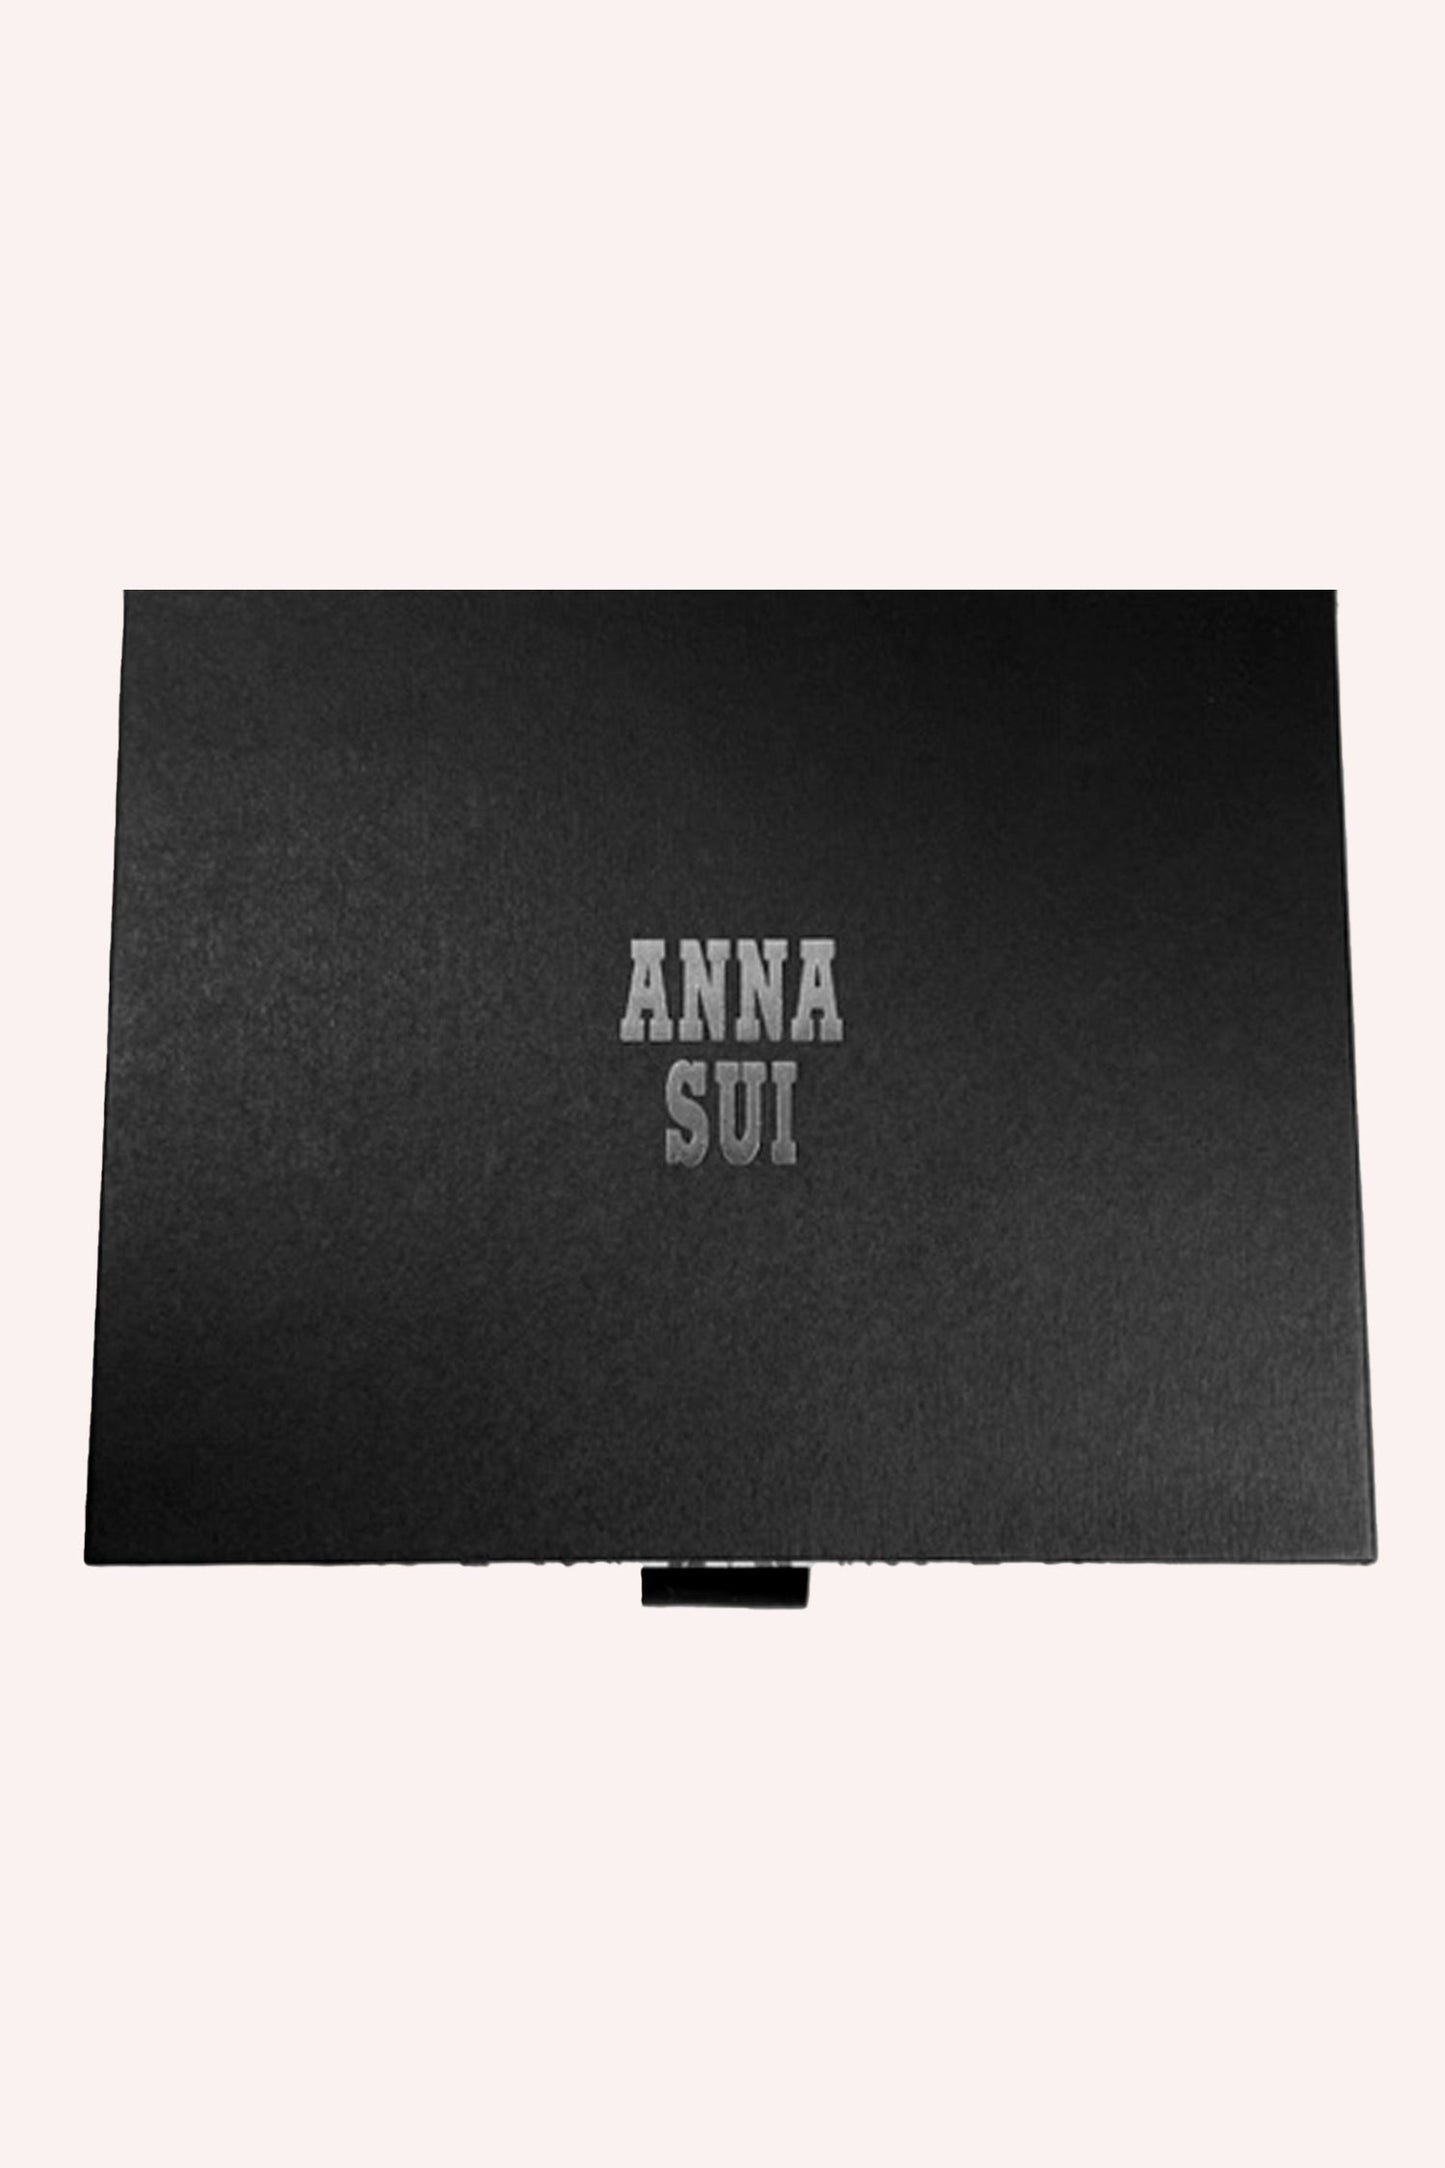 Edizione limitata: Fukubukuro Mystery Box - Anna Sui